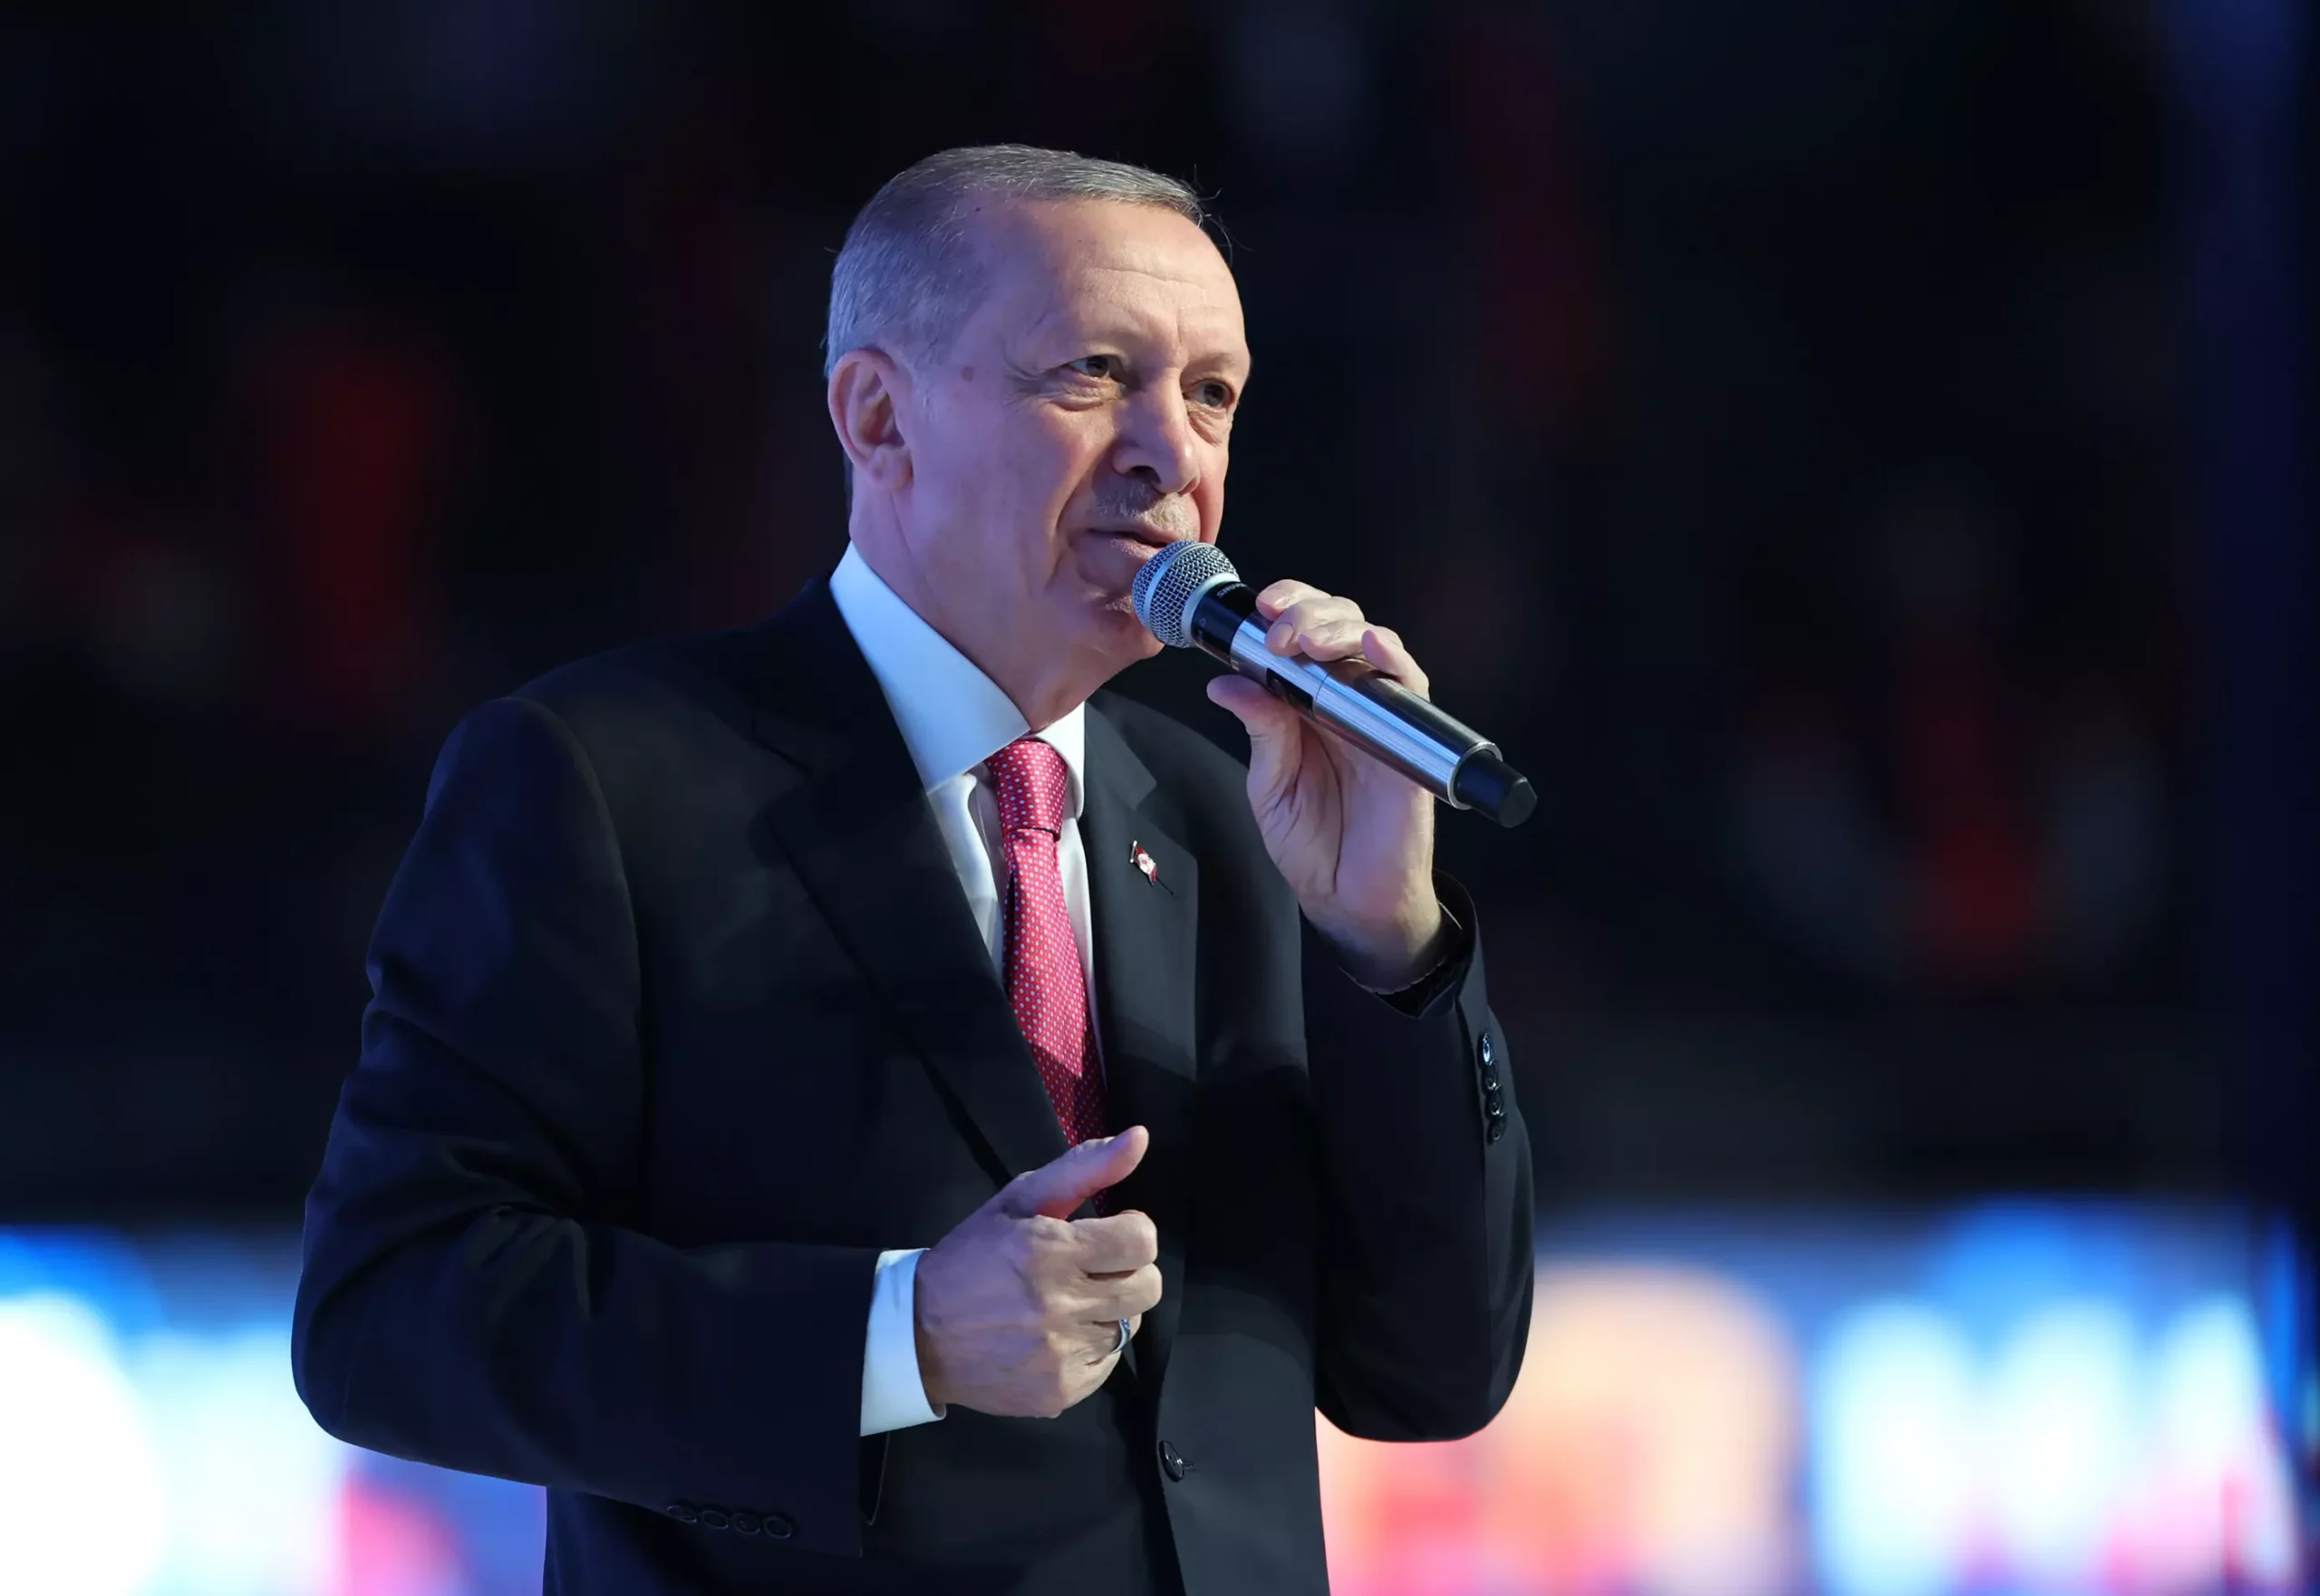 Erdoğan'ın seçim vaadi: Muhalefet yapamaz biz yaparız - Yetkin Report